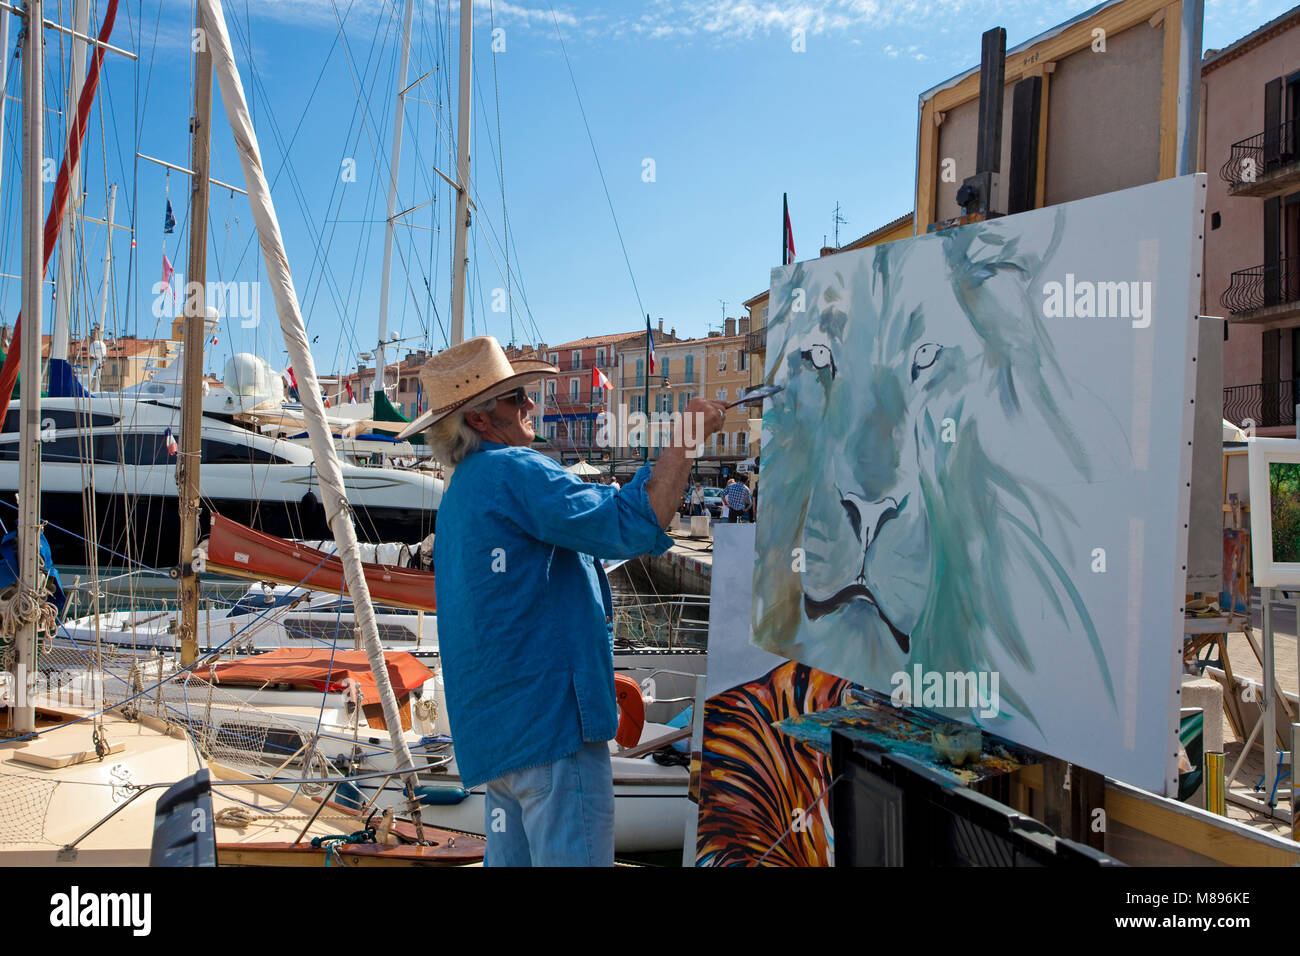 Peintre au travail, flâner, promenade dans le port de Saint-Tropez, Côte d'Azur, France Sud, Côte d'Azur, France, Europe Banque D'Images